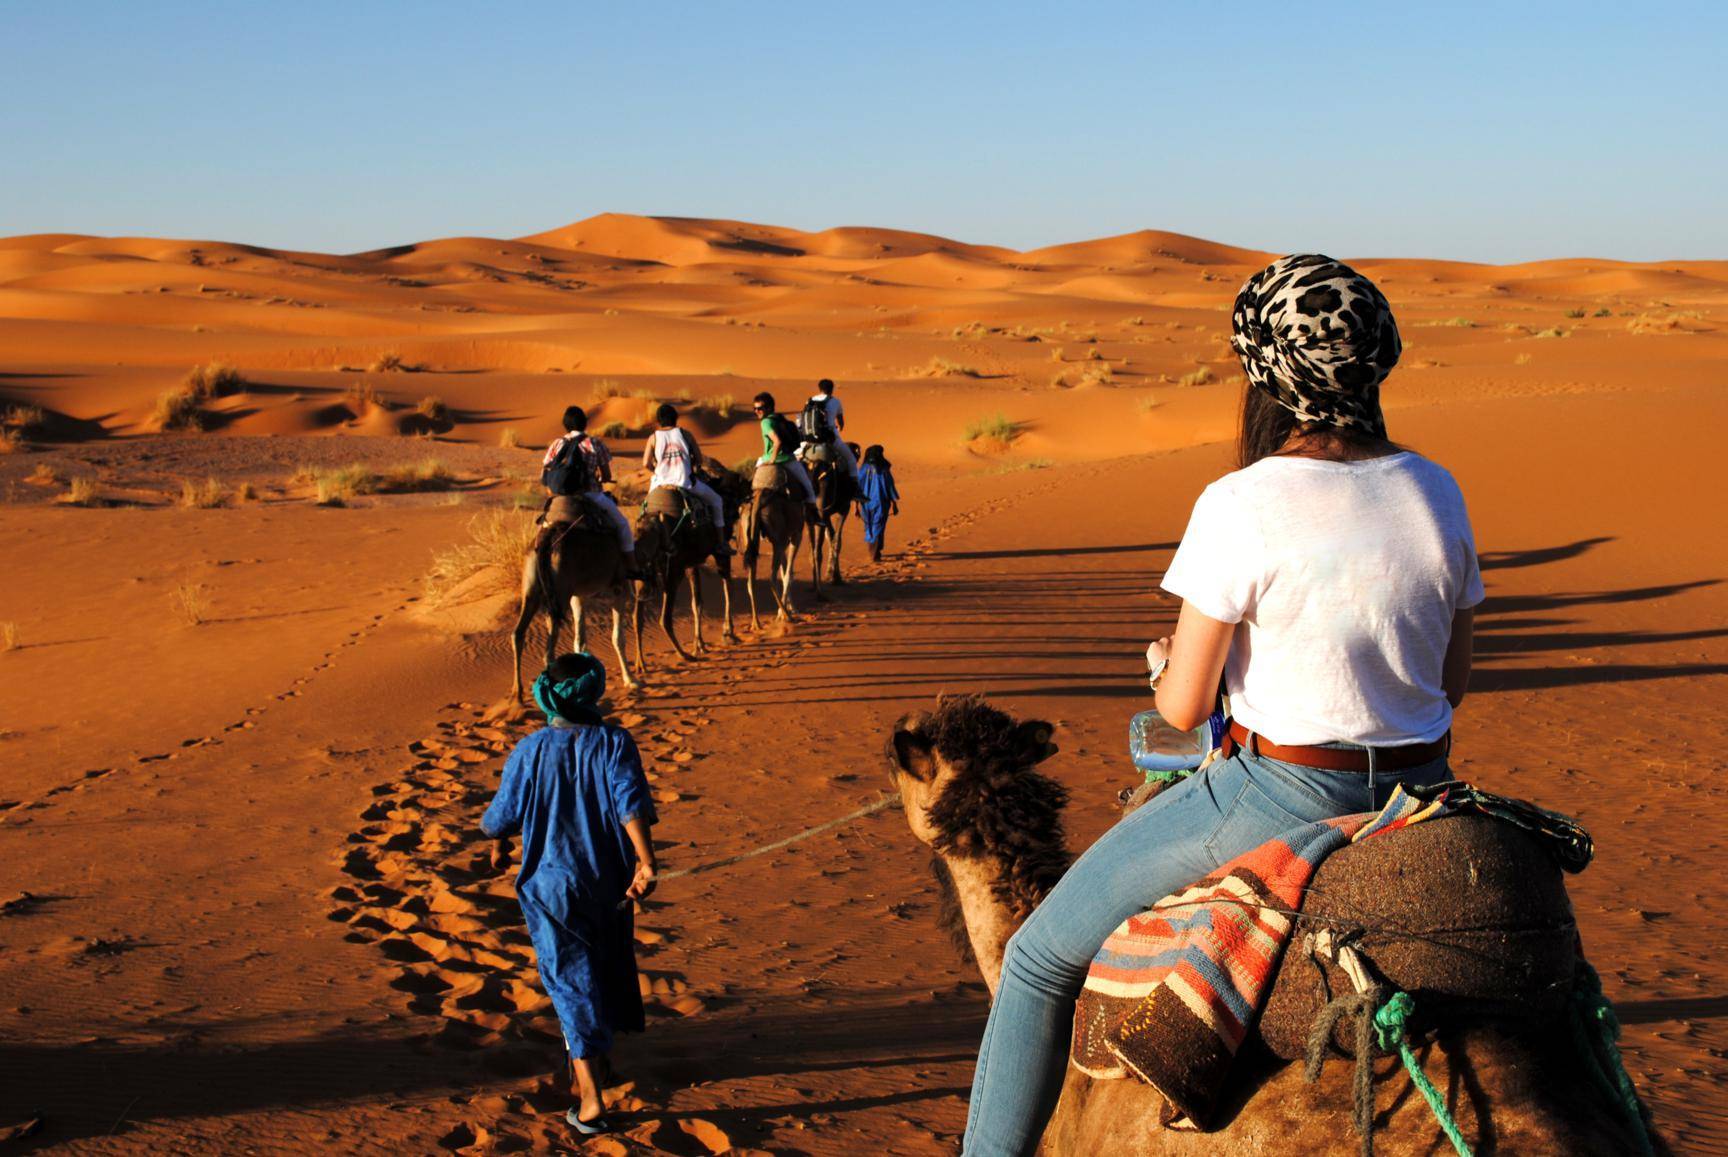 sahara desert: 15 days tour from Casablanca